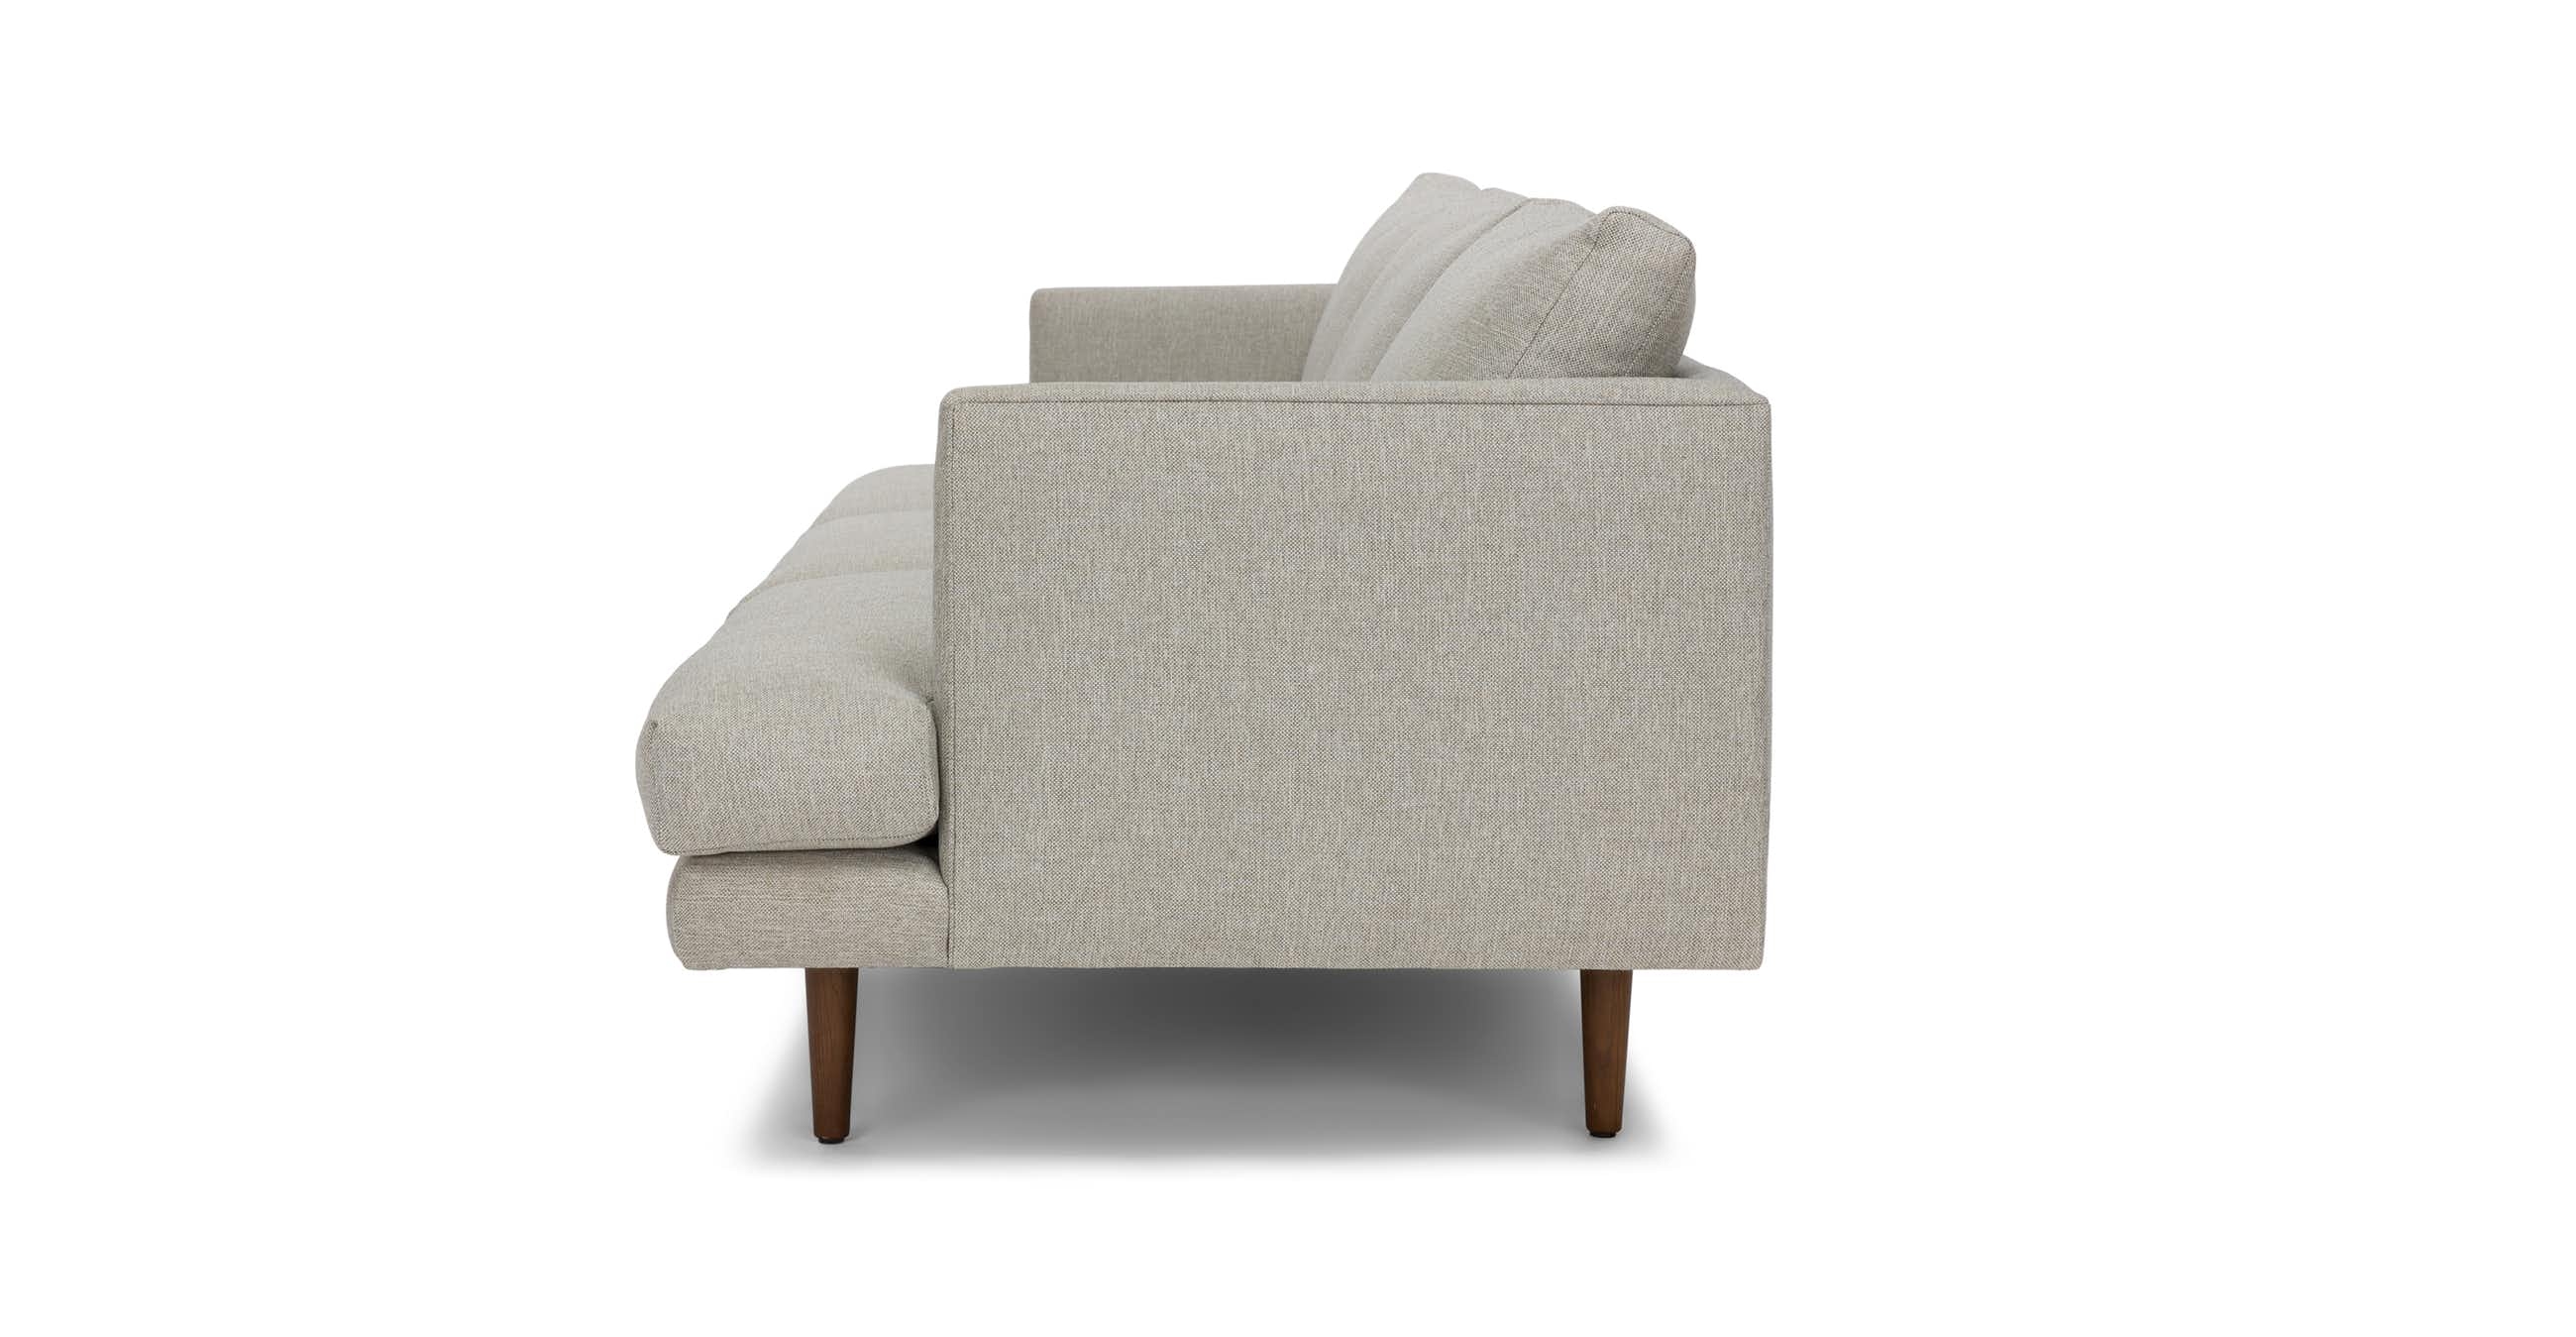 Burrard 83.5" Sofa - Seasalt Gray - Image 4